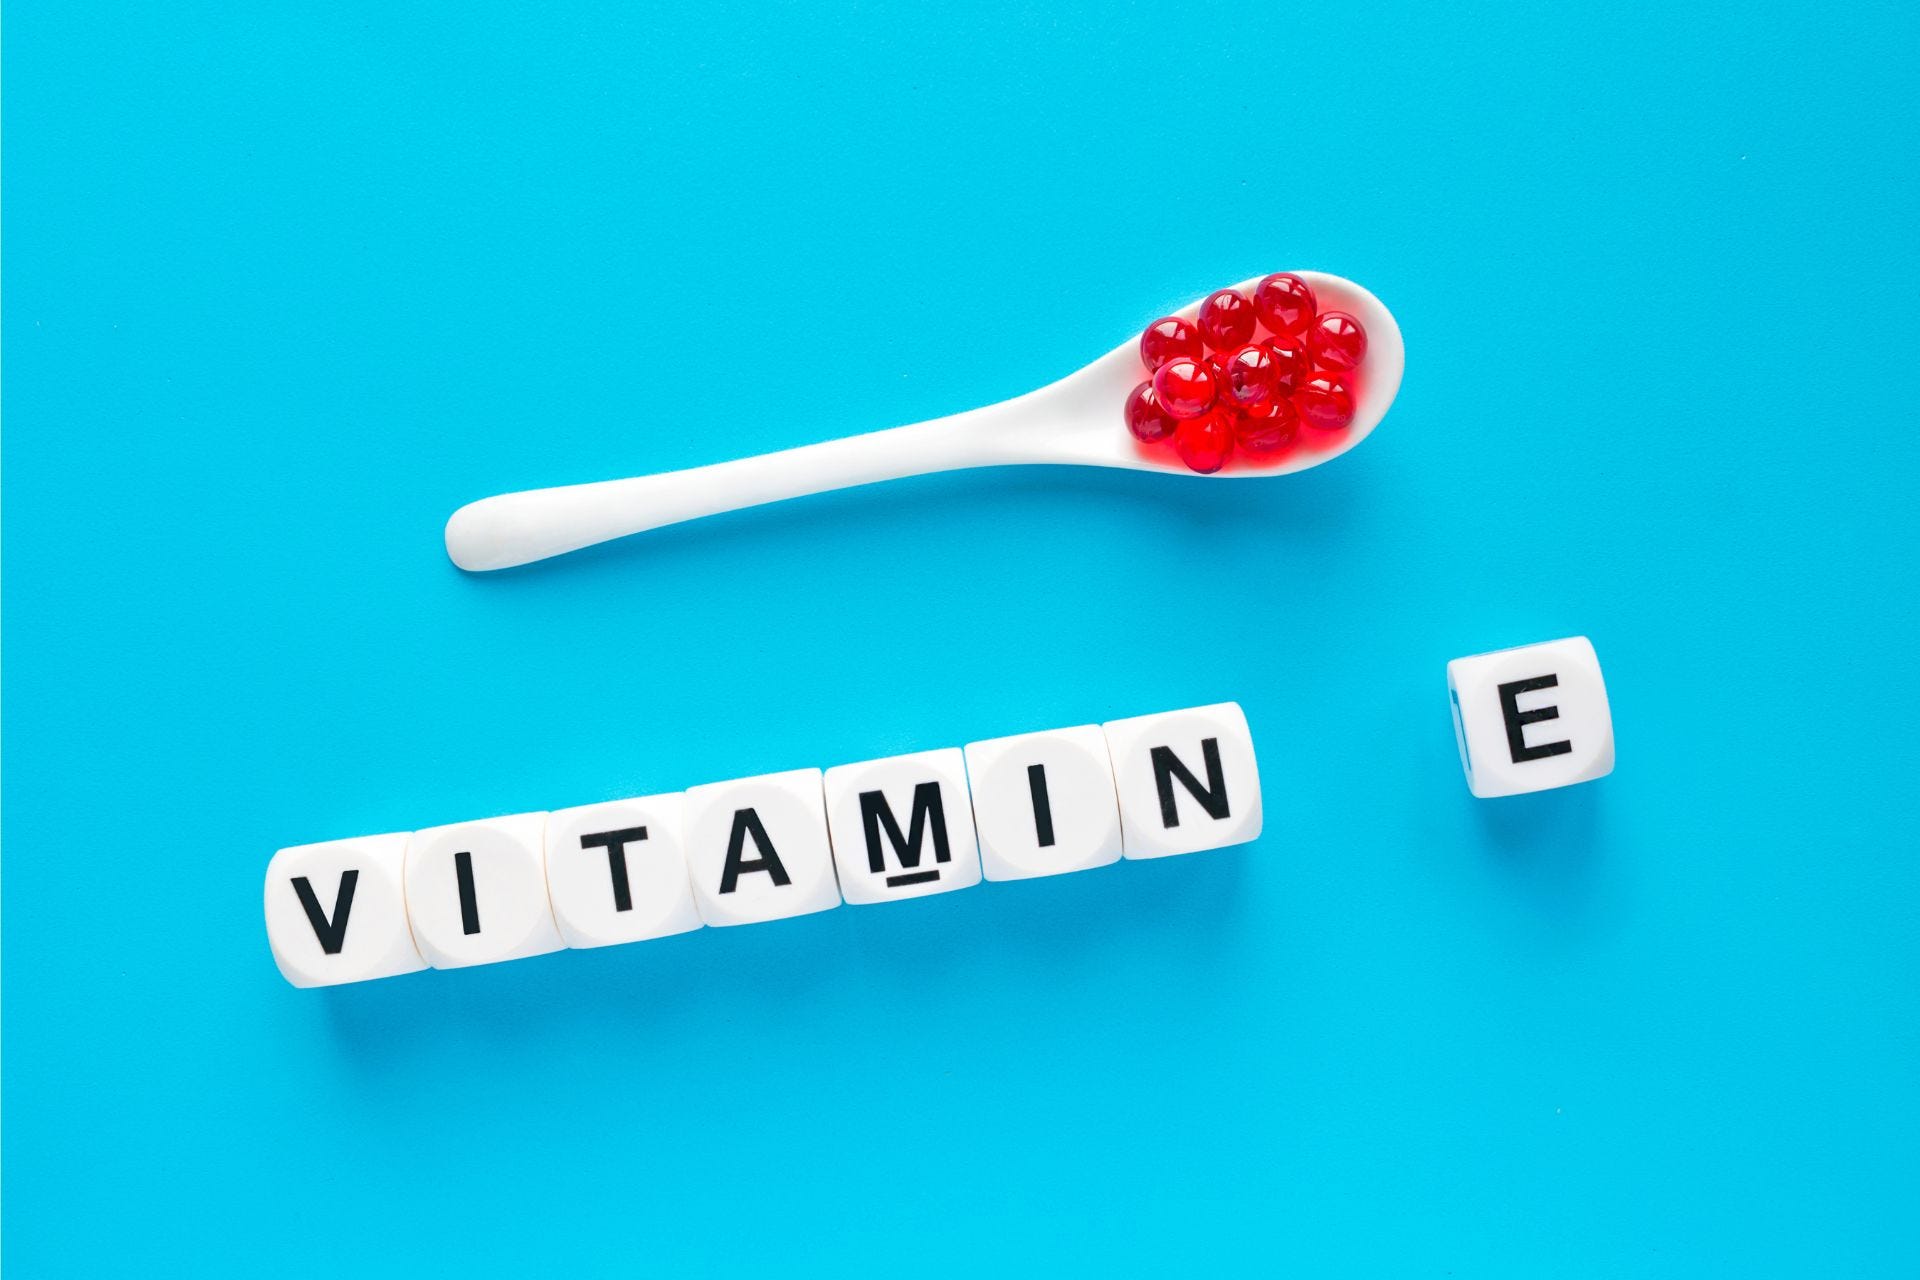 Spoon and blocks spelling vitamin e